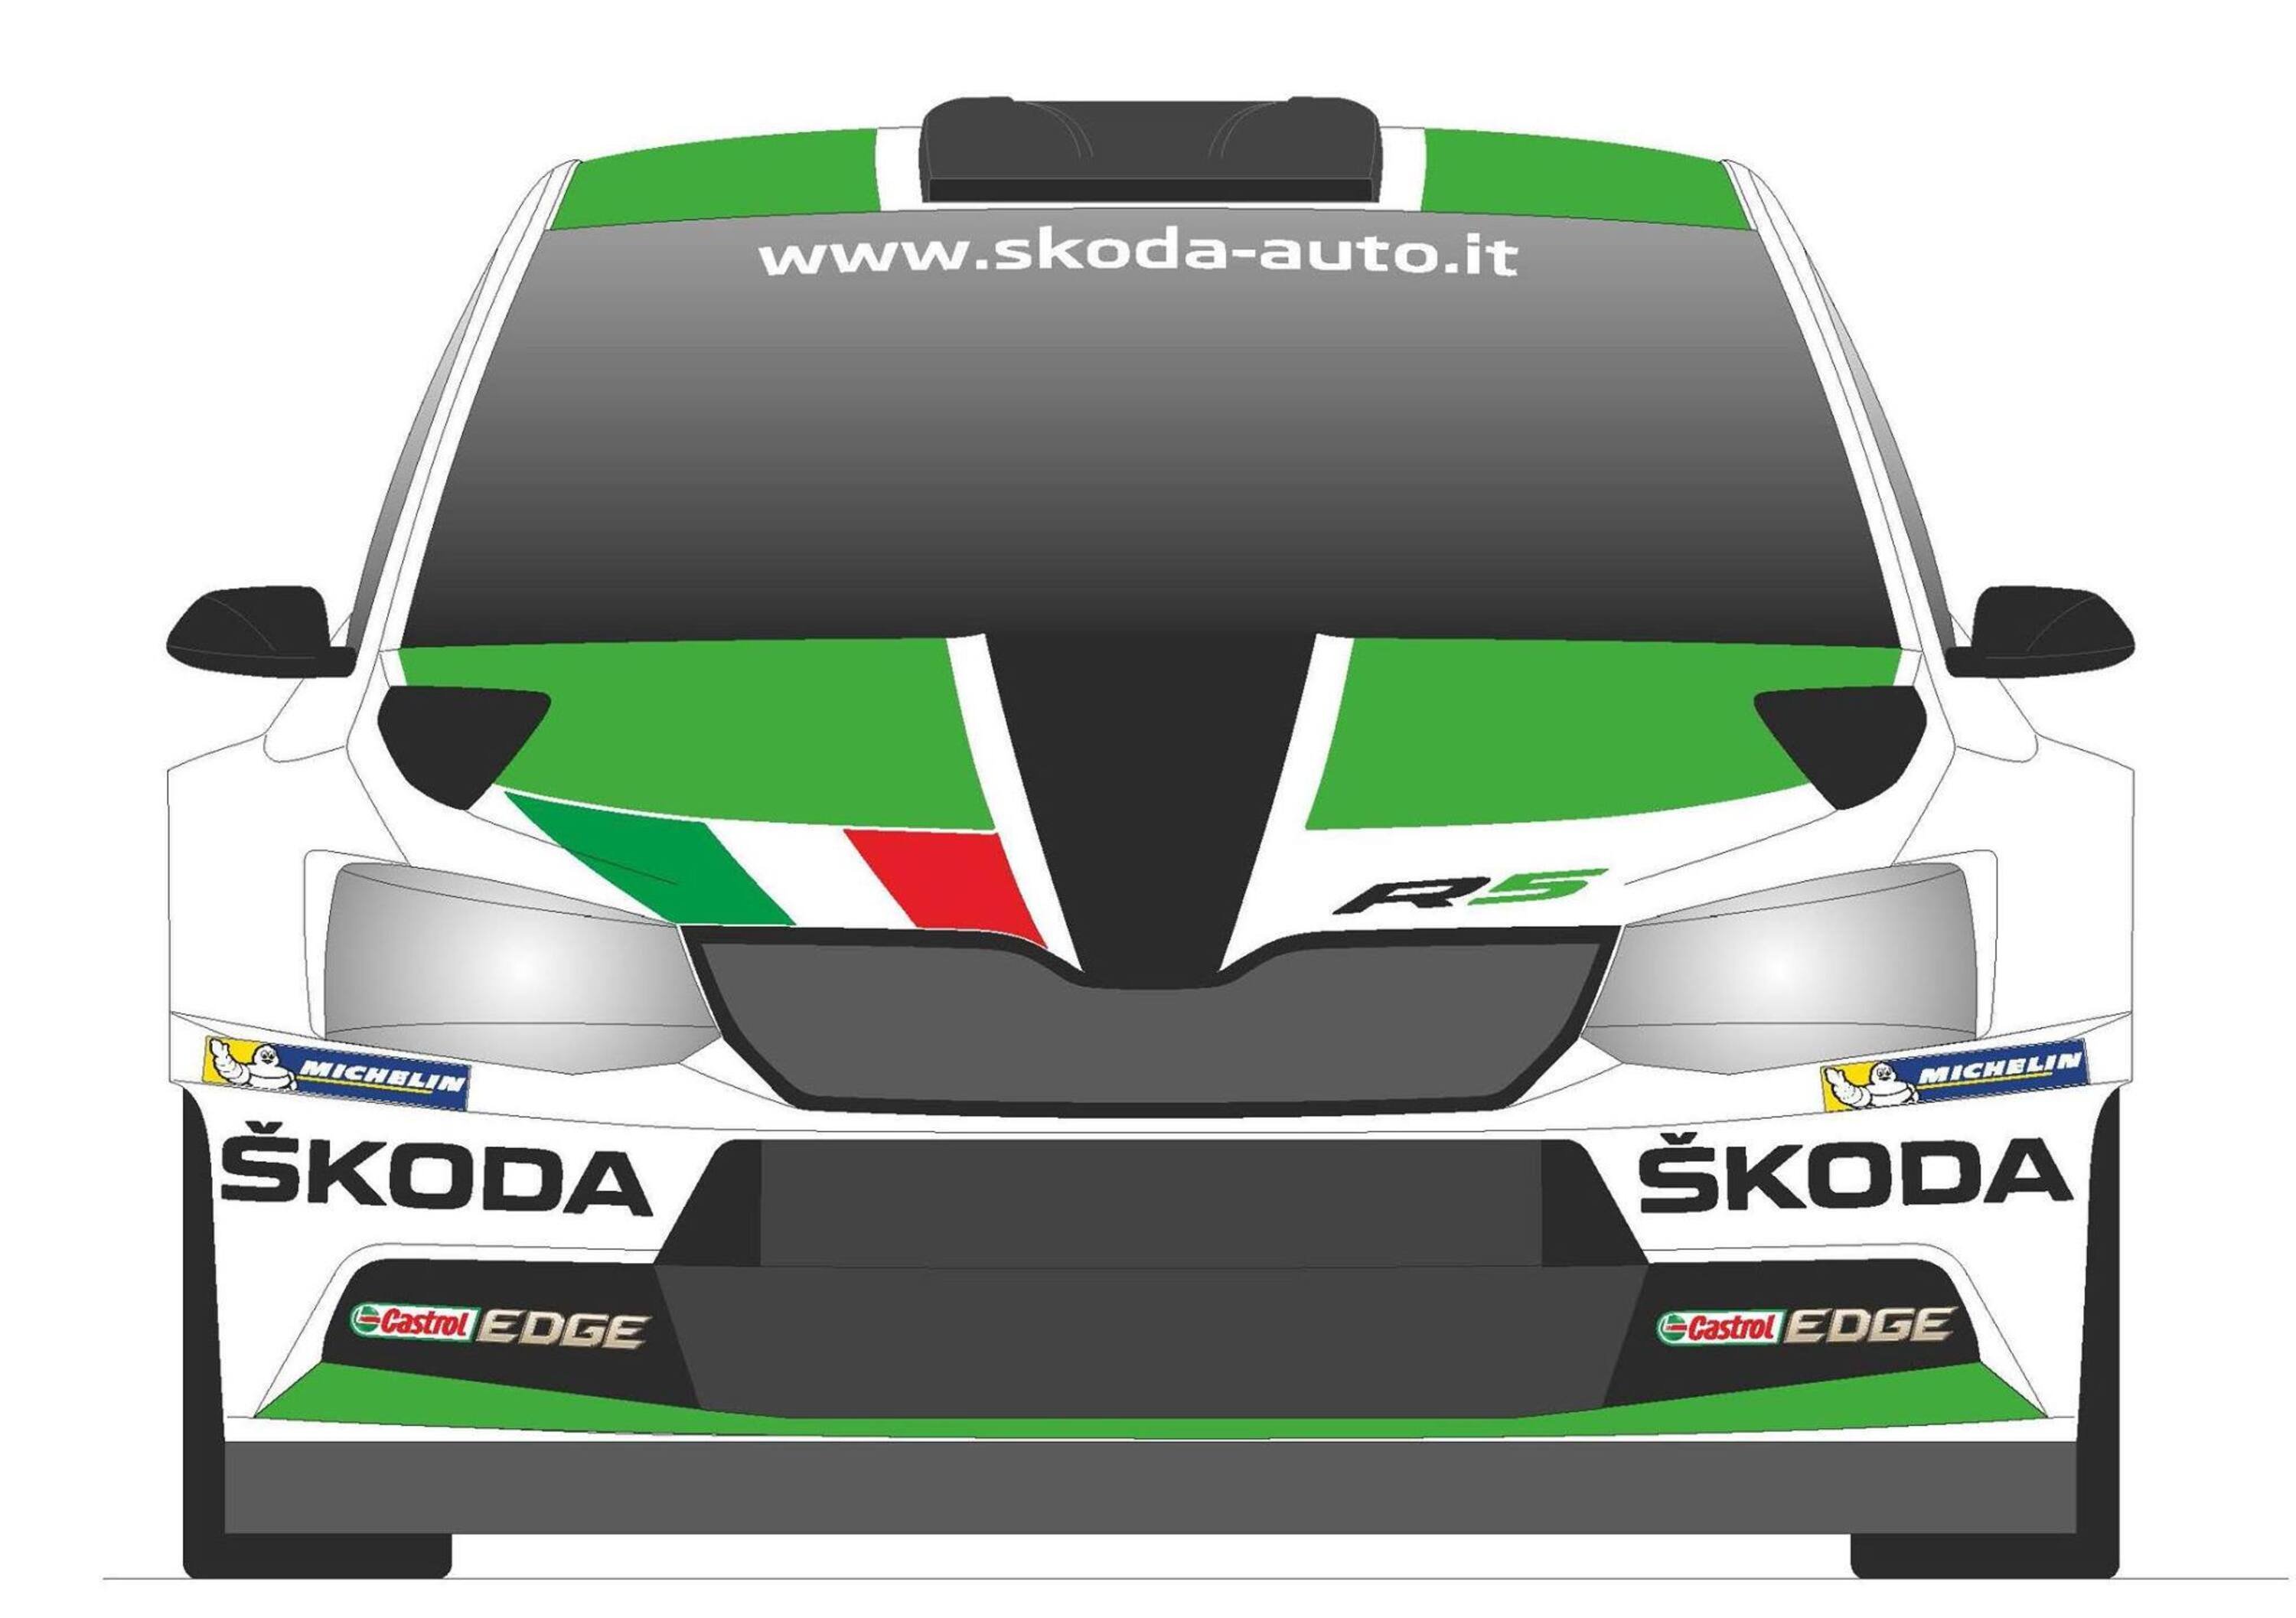 Skoda Fabia R5 pronta al debutto a San Marino con Scandola